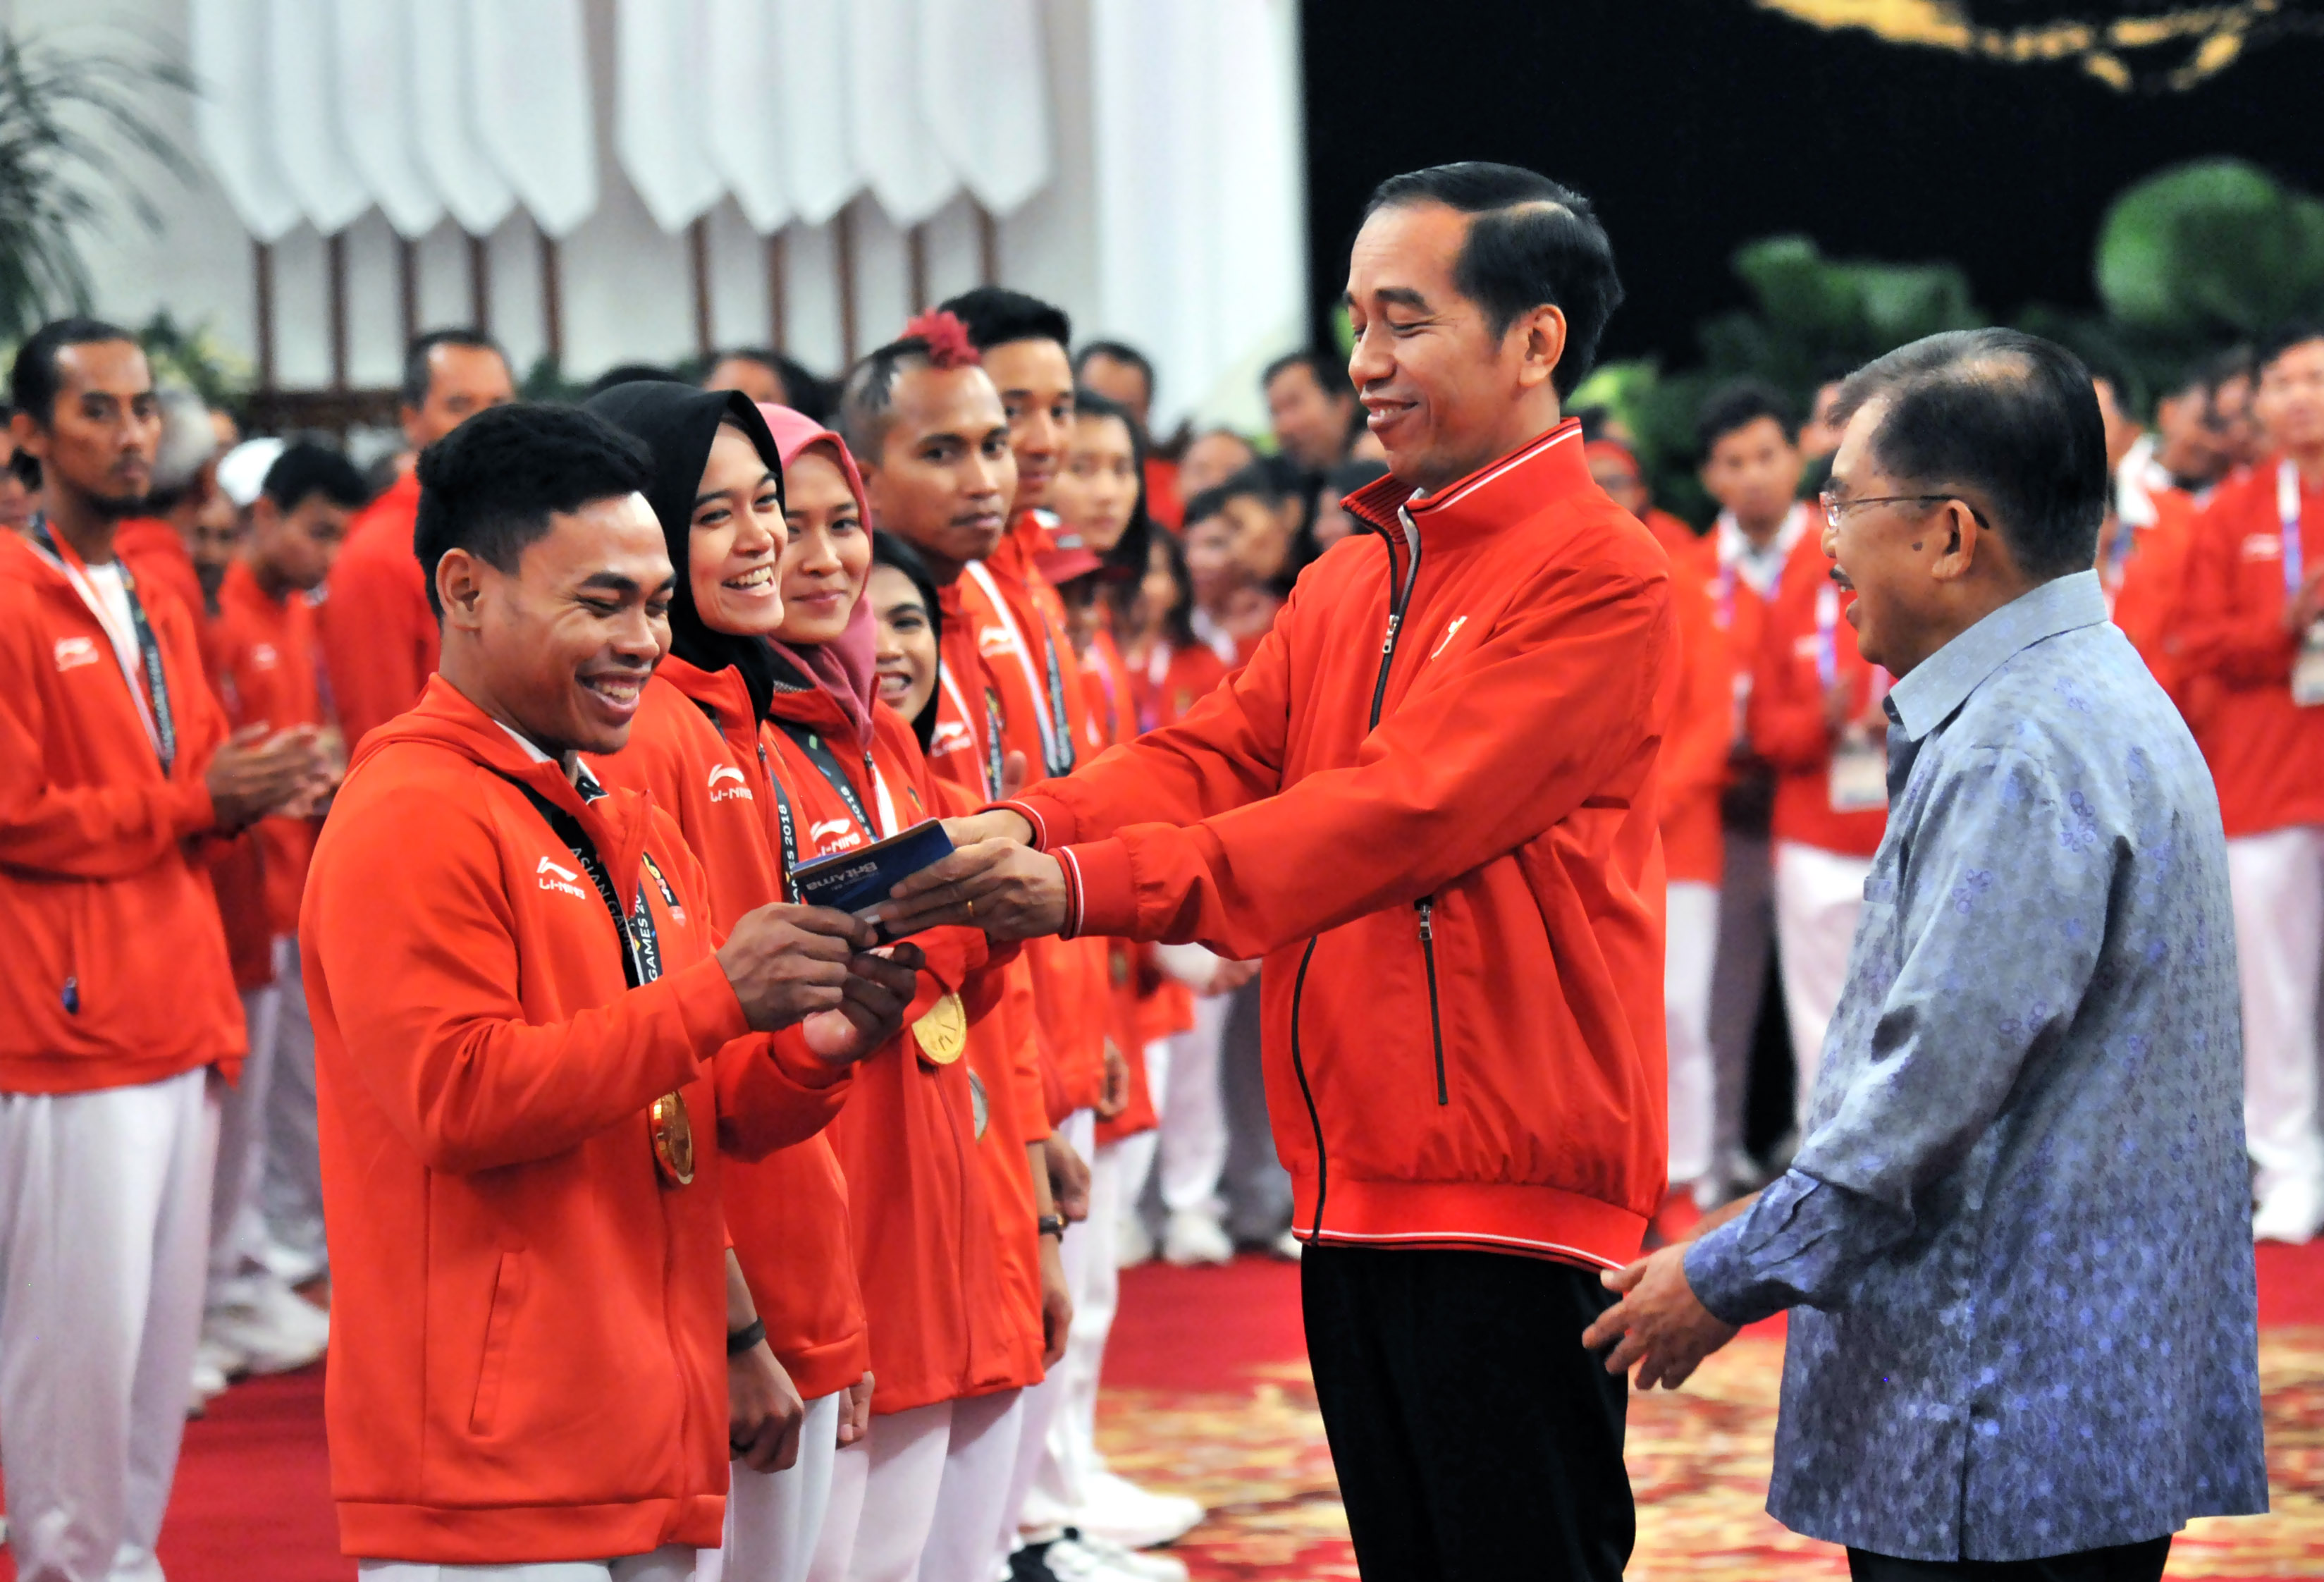 Atlet angkat besi Eko Yuli Irawan menerima buku tabungan bonus Rp 1,5 miliar dari Presiden Jokowi didampingi Wakil Presiden Jusuf Kalla di acara silaturahmi atlet peraih medali Asian Games 2018 di Istana Negara Jakarta, Minggu 2 September 2018.